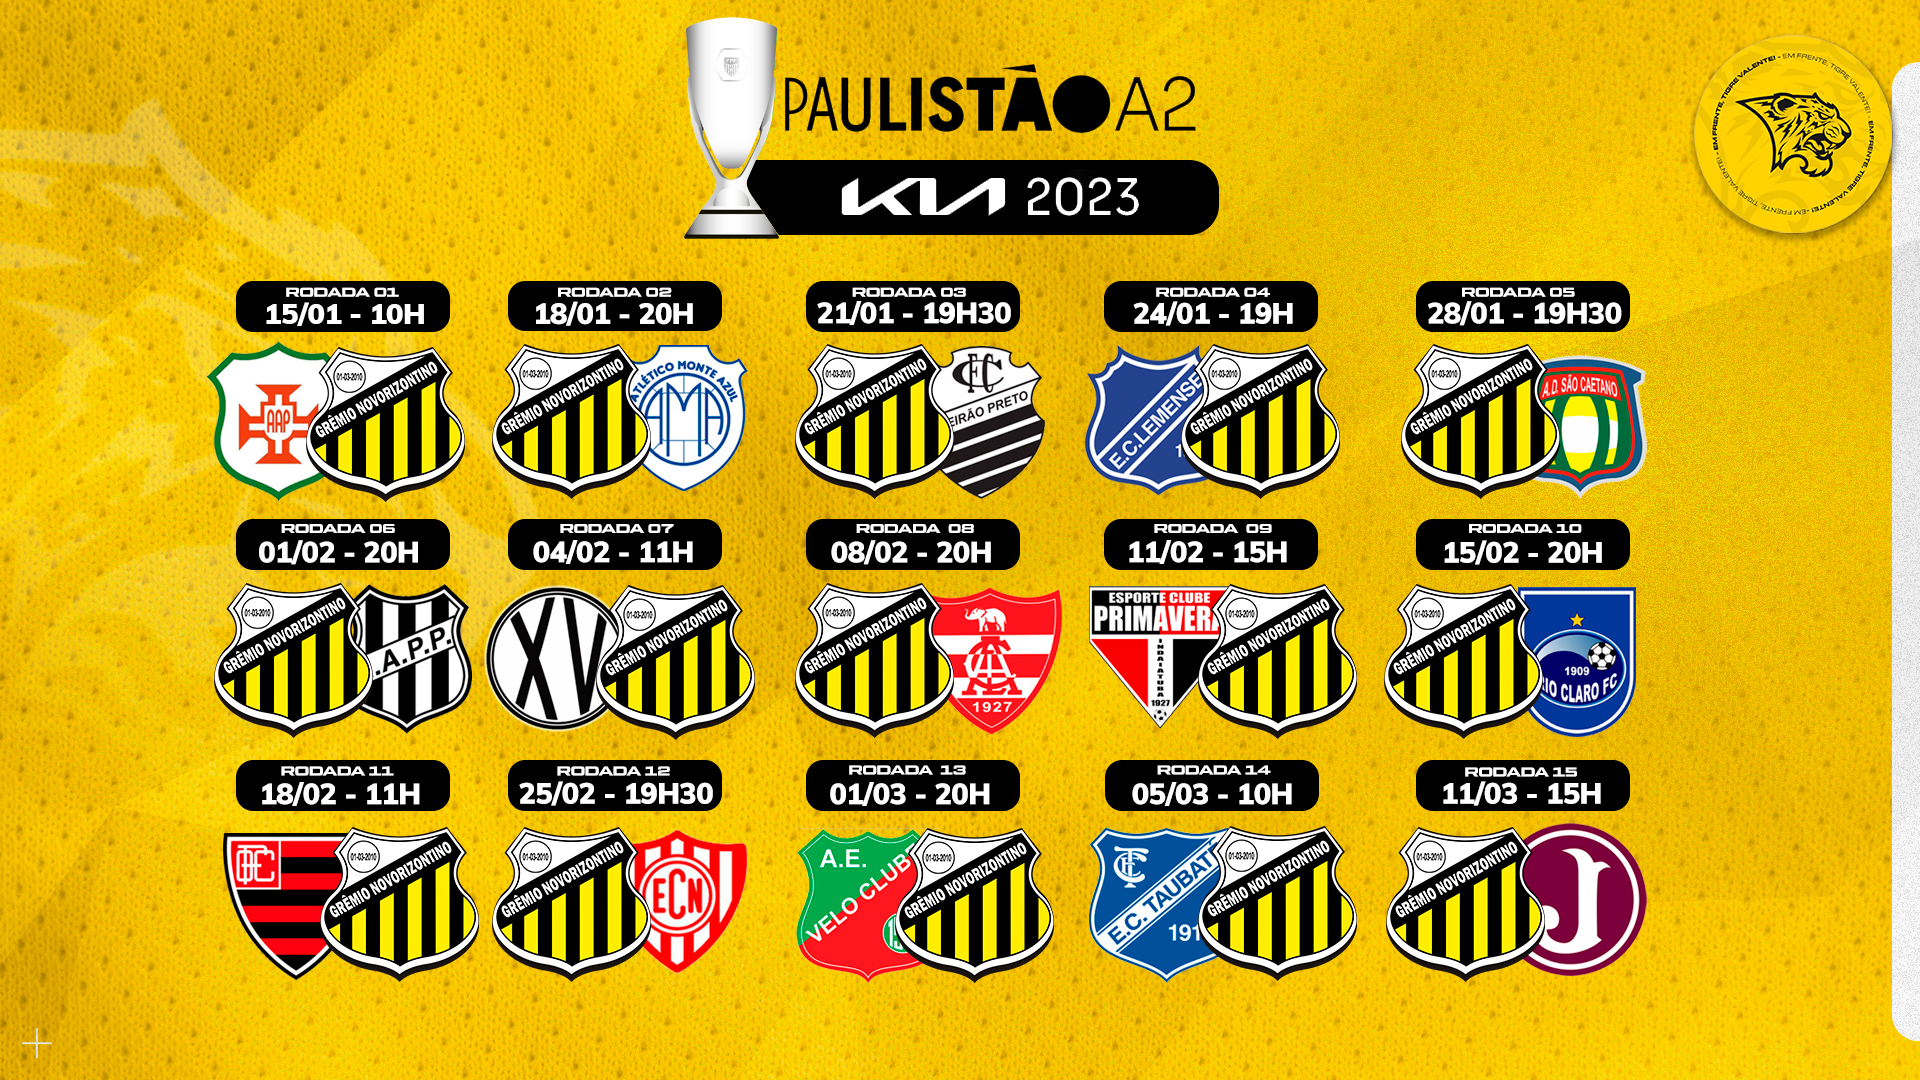 Tabela do Campeonato Paulista A2 2022 - Gazeta Esportiva